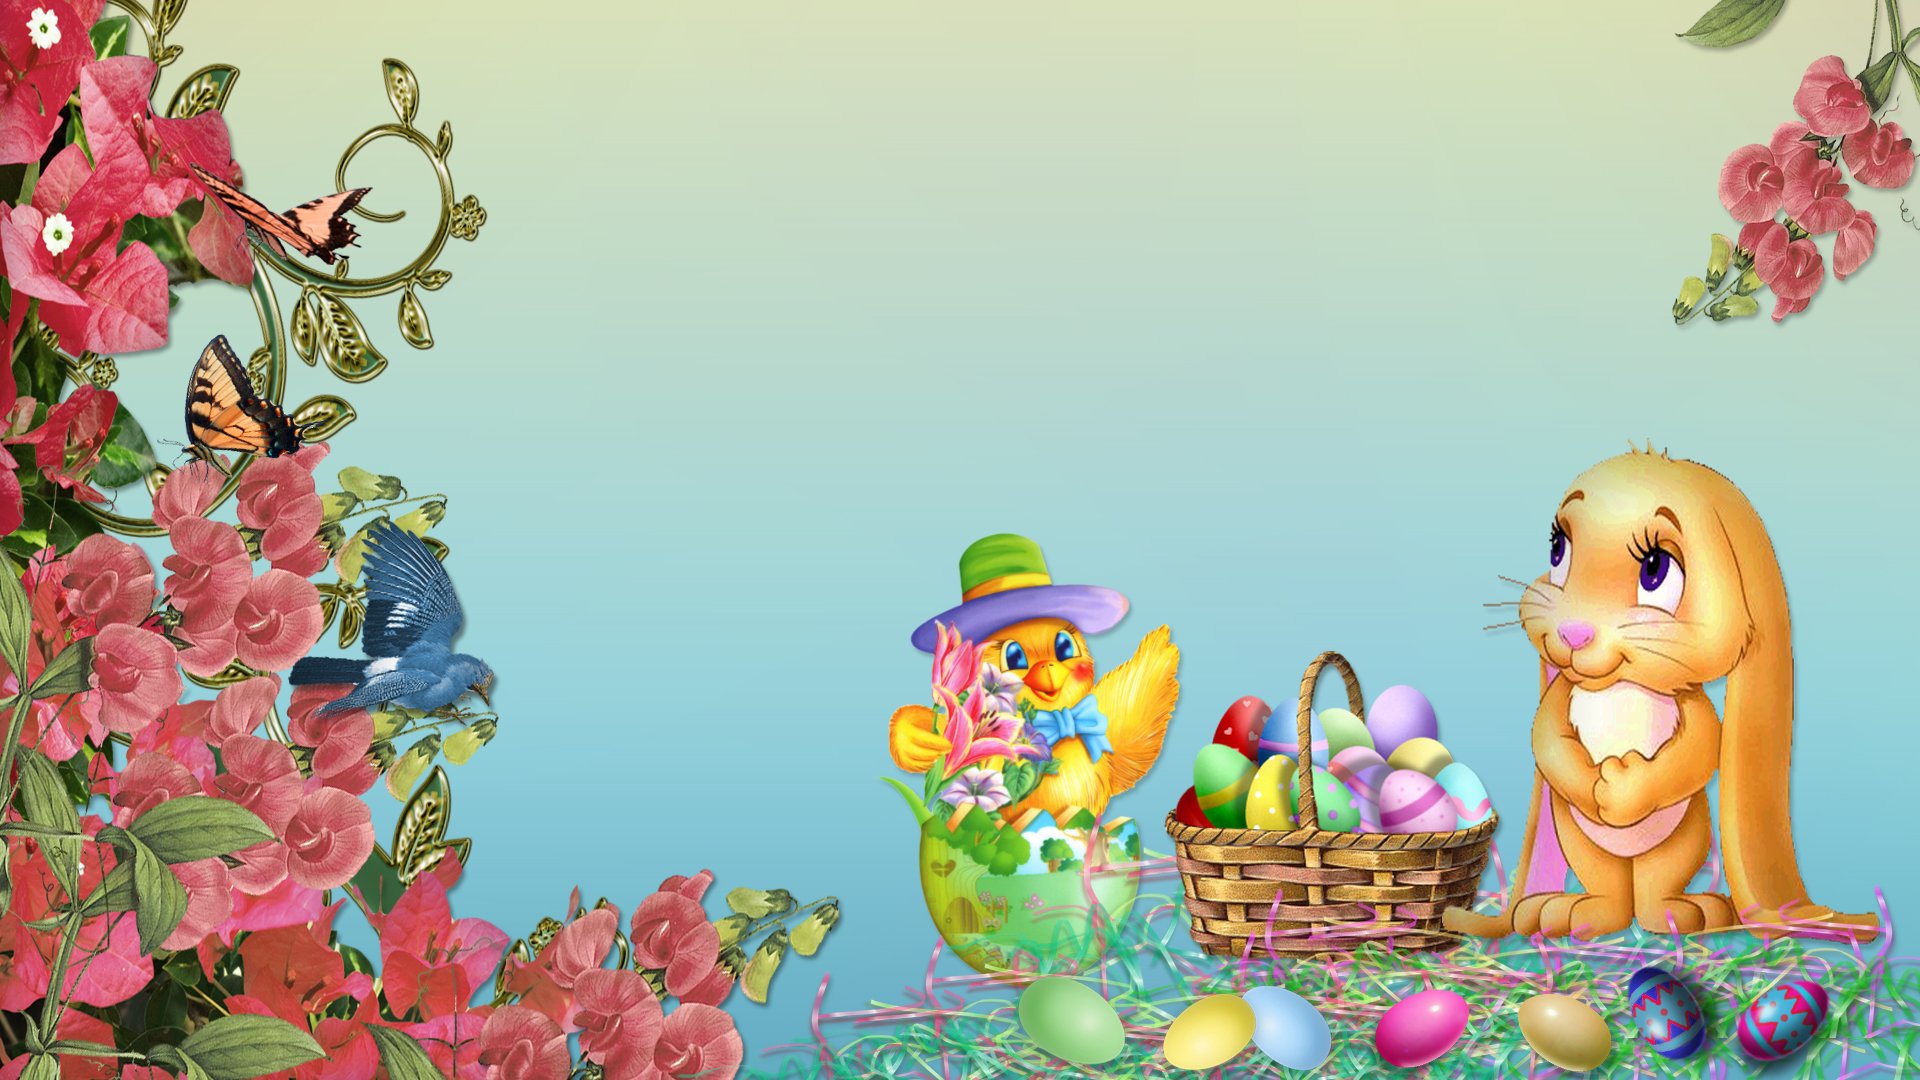 Happy Easter HD Wallpaper